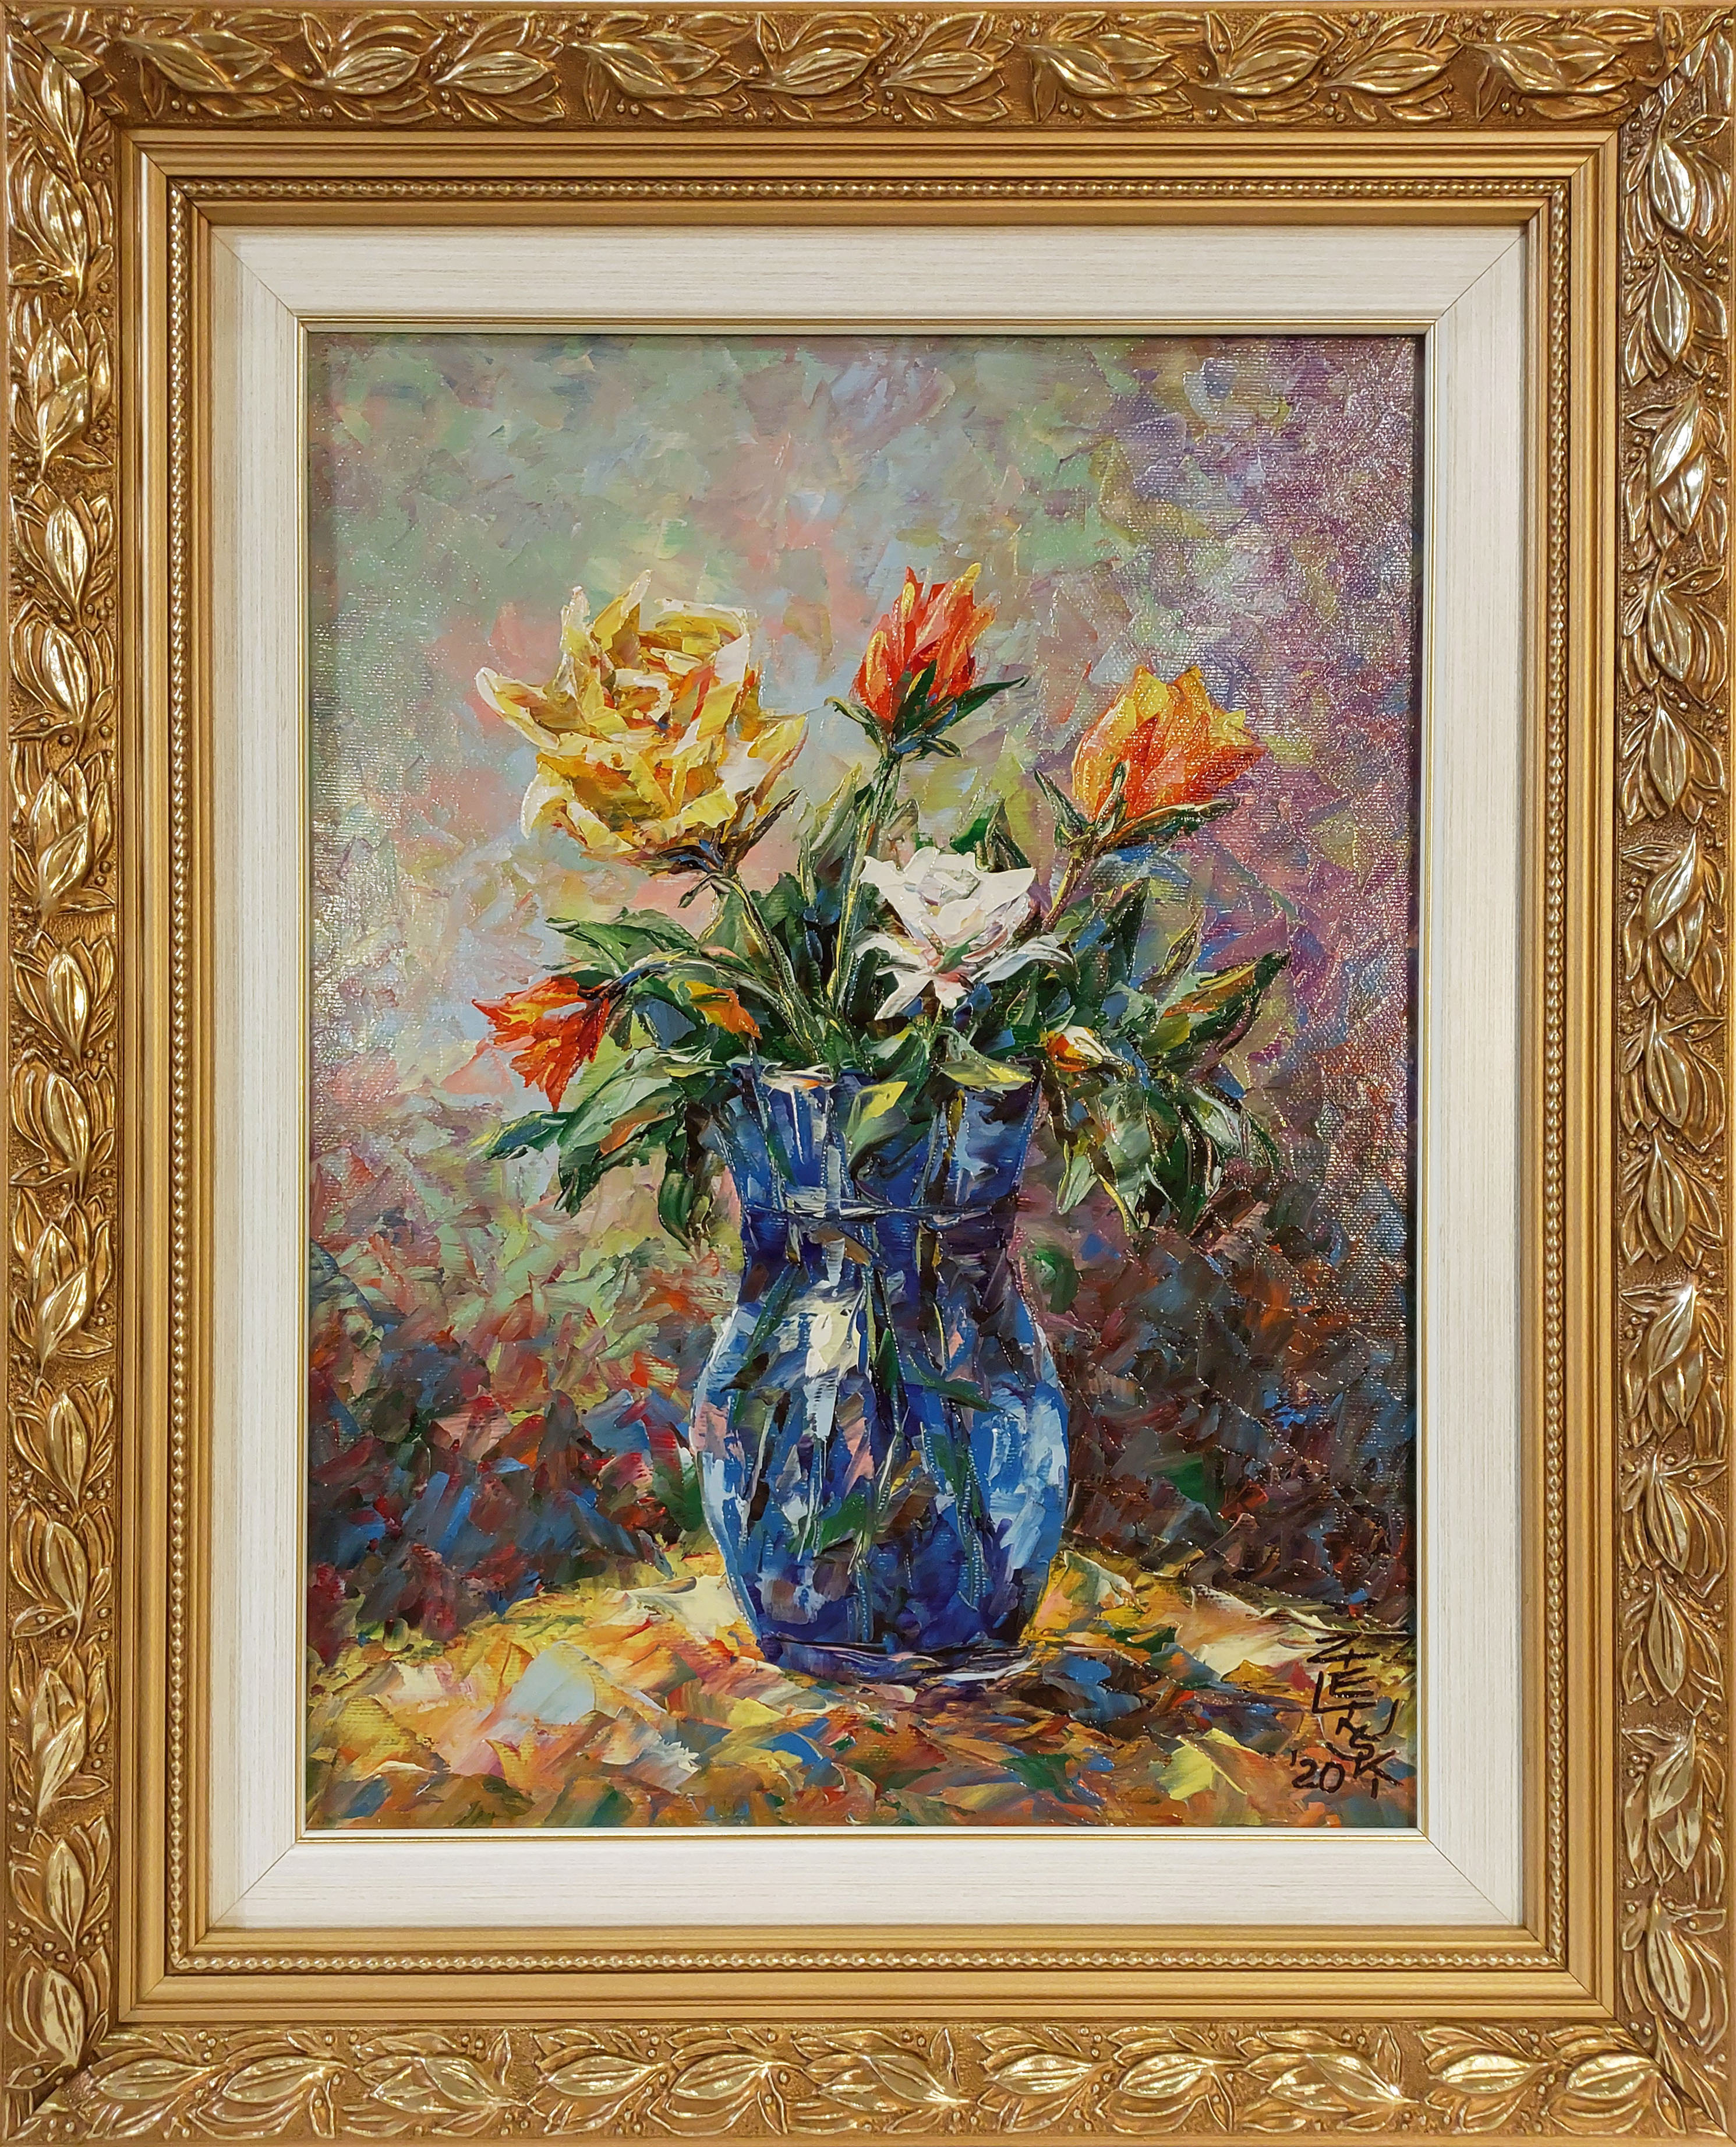 Kwiaty w niebieskim flakonie  — Janusz Zieliński